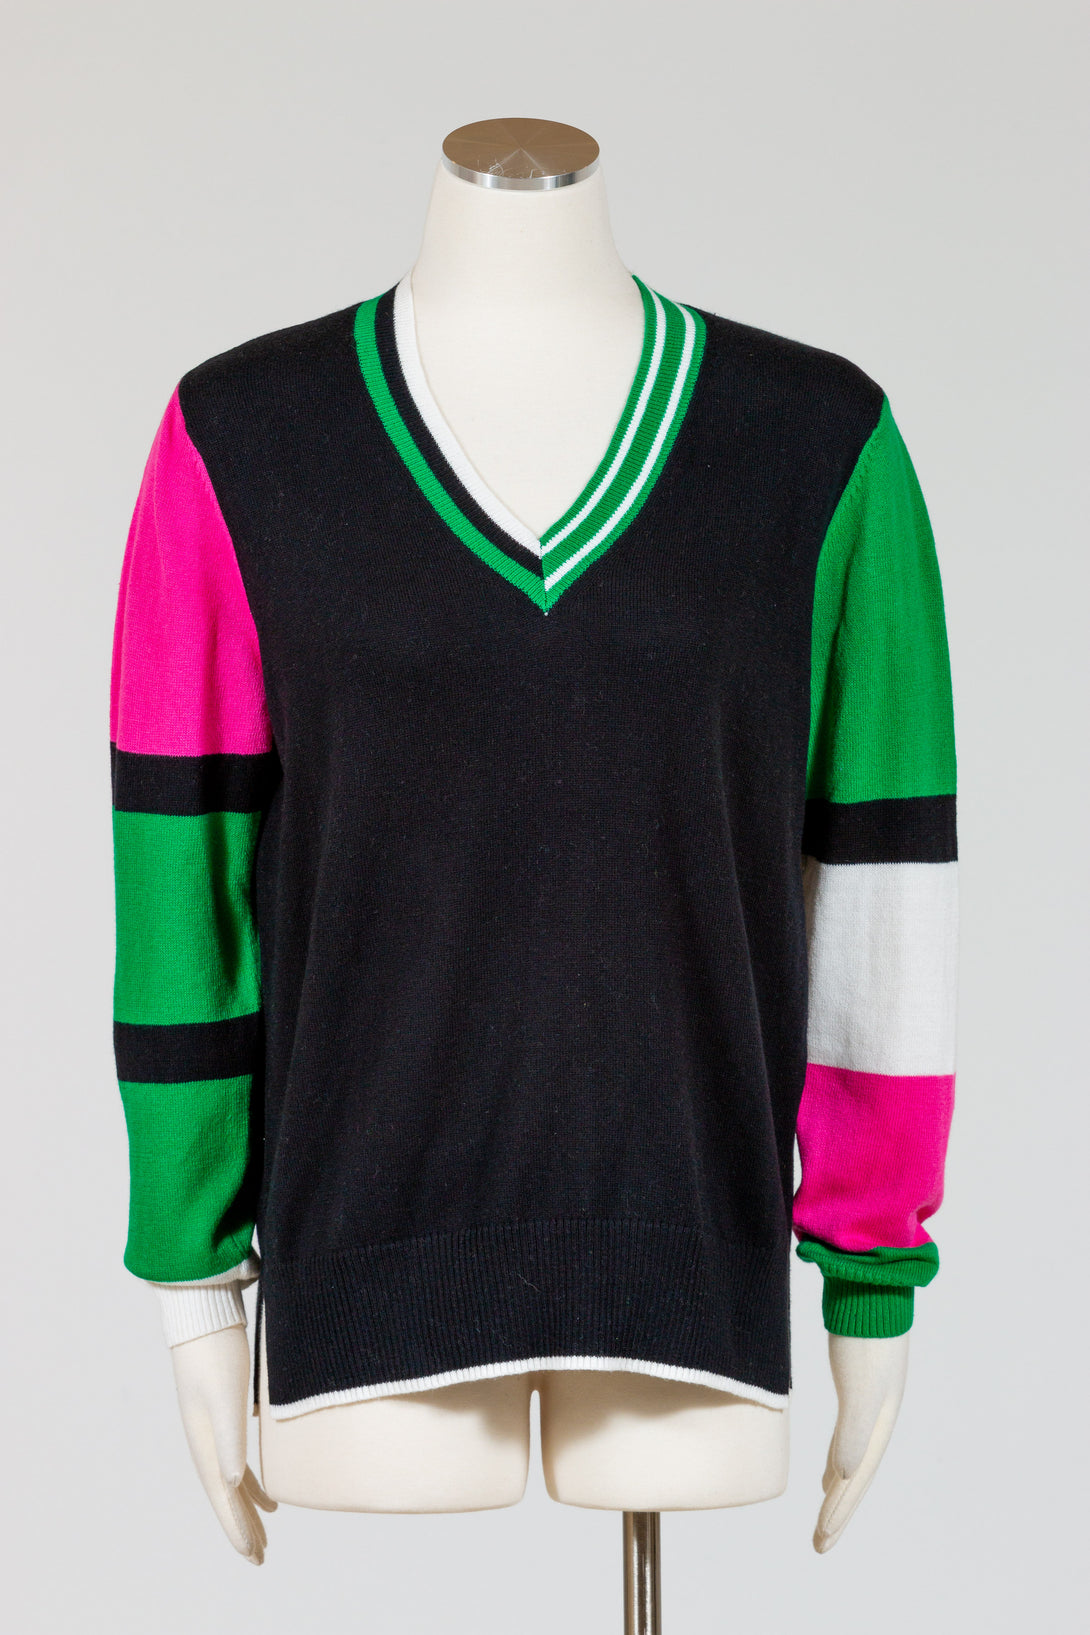 Zaket & Plover Cricket Sweater